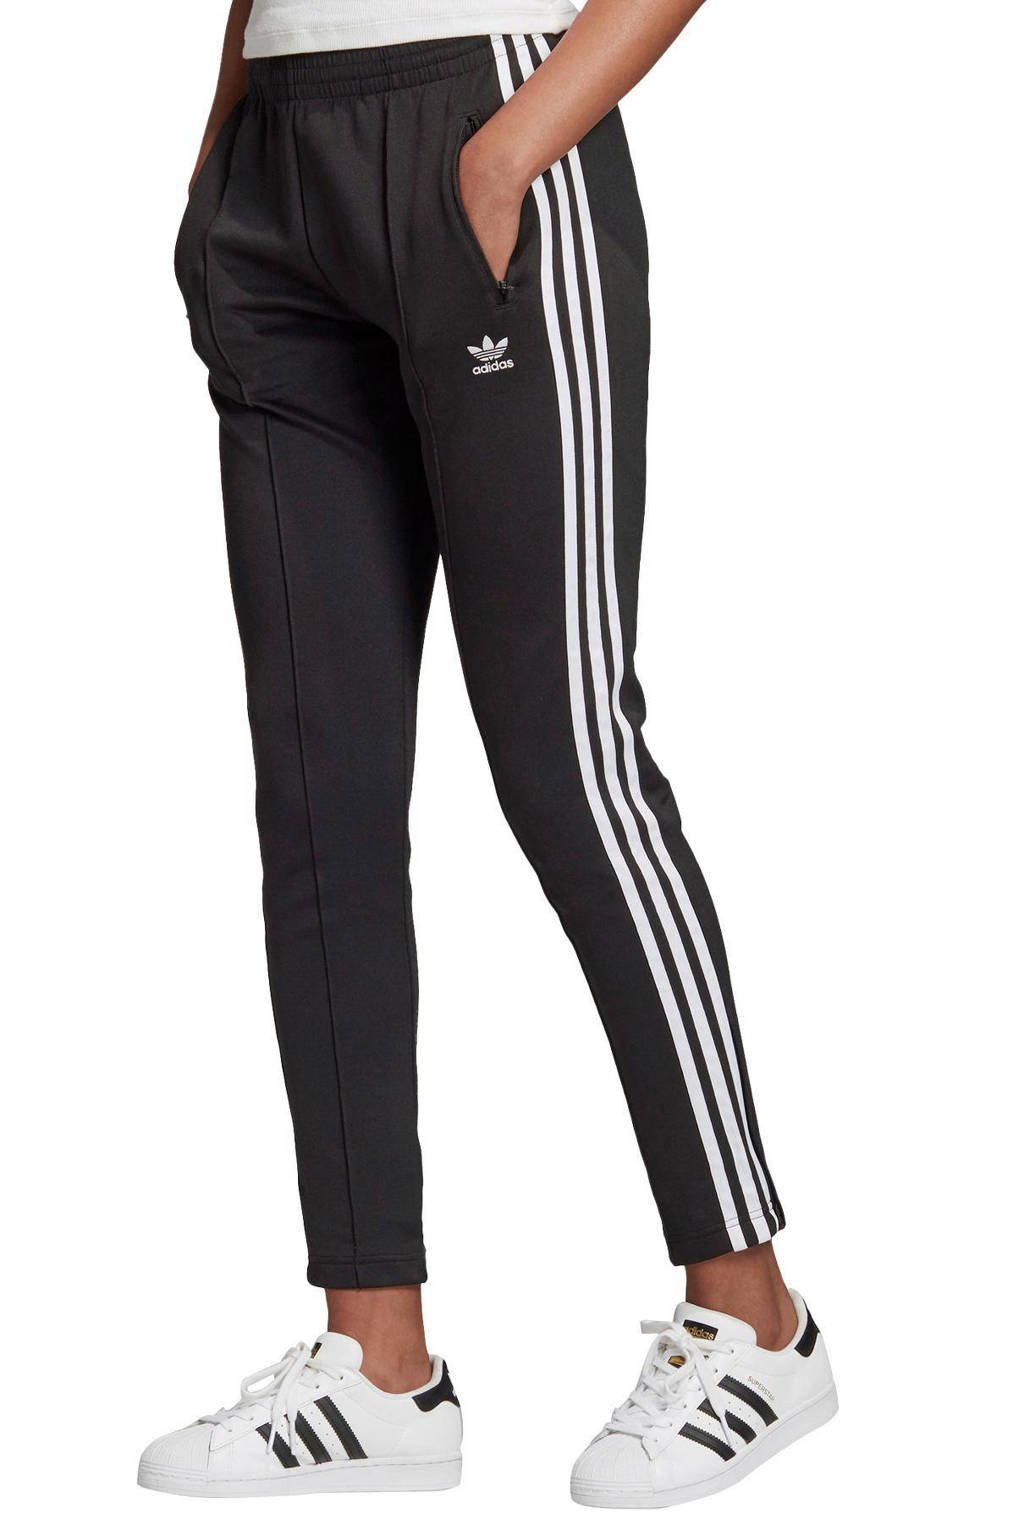 erotisch Twee graden Schuur adidas Originals Superstar joggingbroek zwart/wit | wehkamp